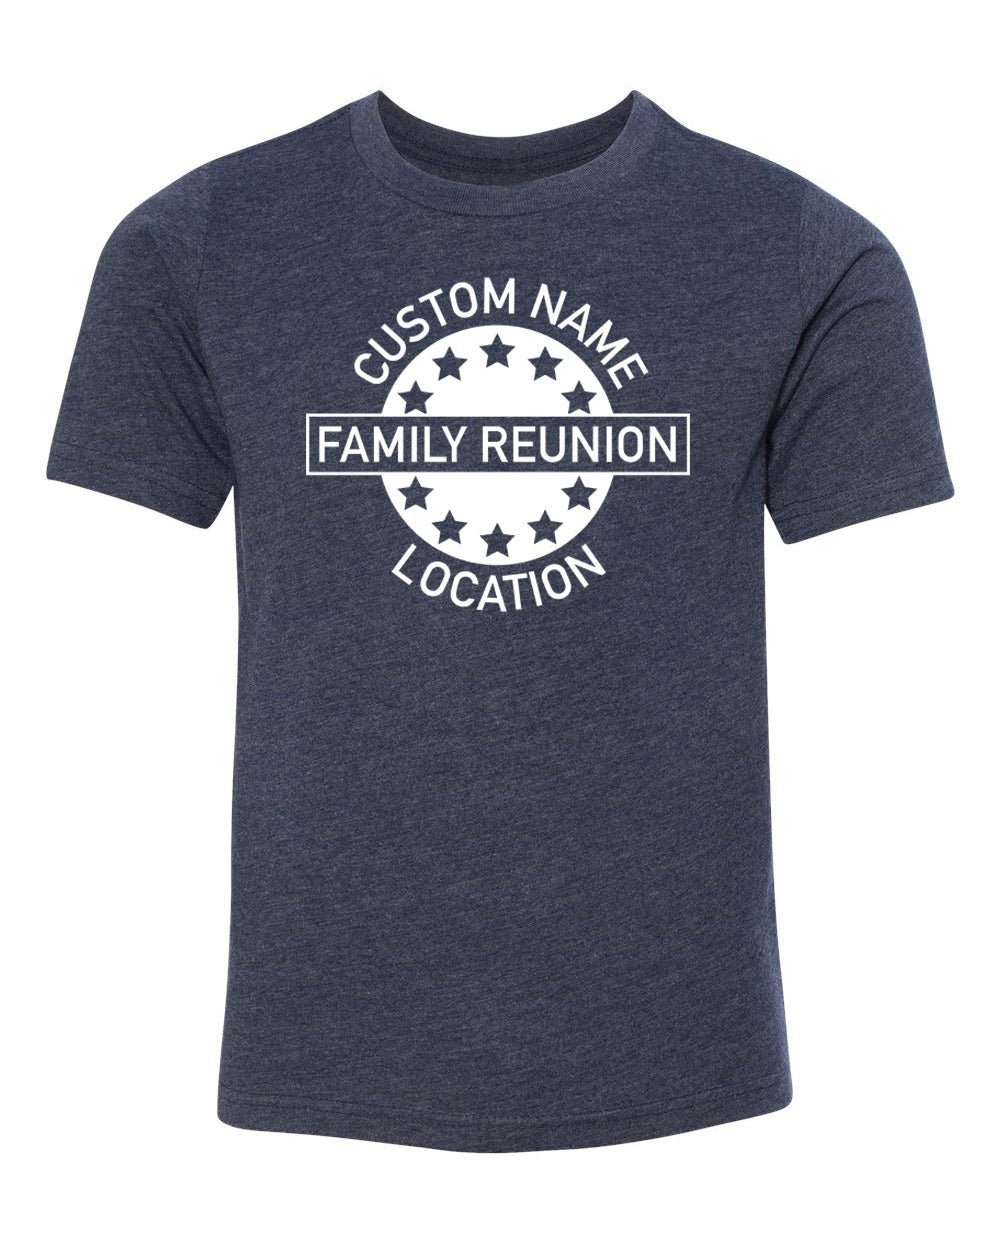 Stars Emblem Custom Name & Location Family Reunion Kids T Shirts - Mato & Hash